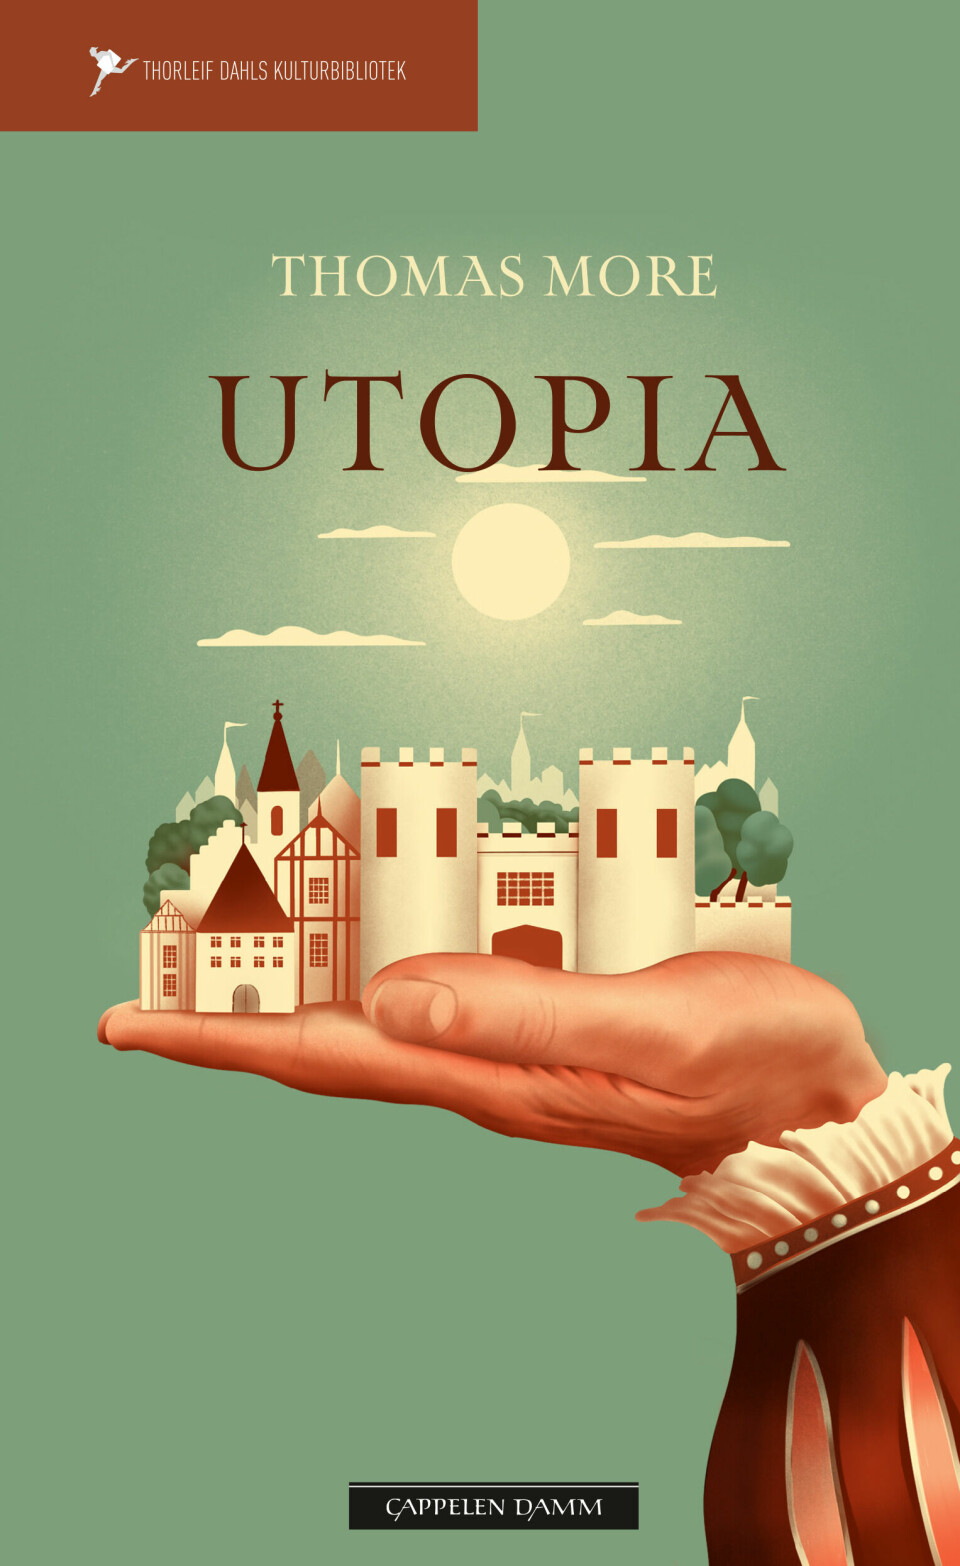 Begrepet «utopi» ble først brukt av Thomas More i boka Utopia (først publisert i 1516). Boka er blitt en klassiker, og en ny norsk oversettelse gis ut i disse dager på Thorleif Dahls Kulturbibliotek.